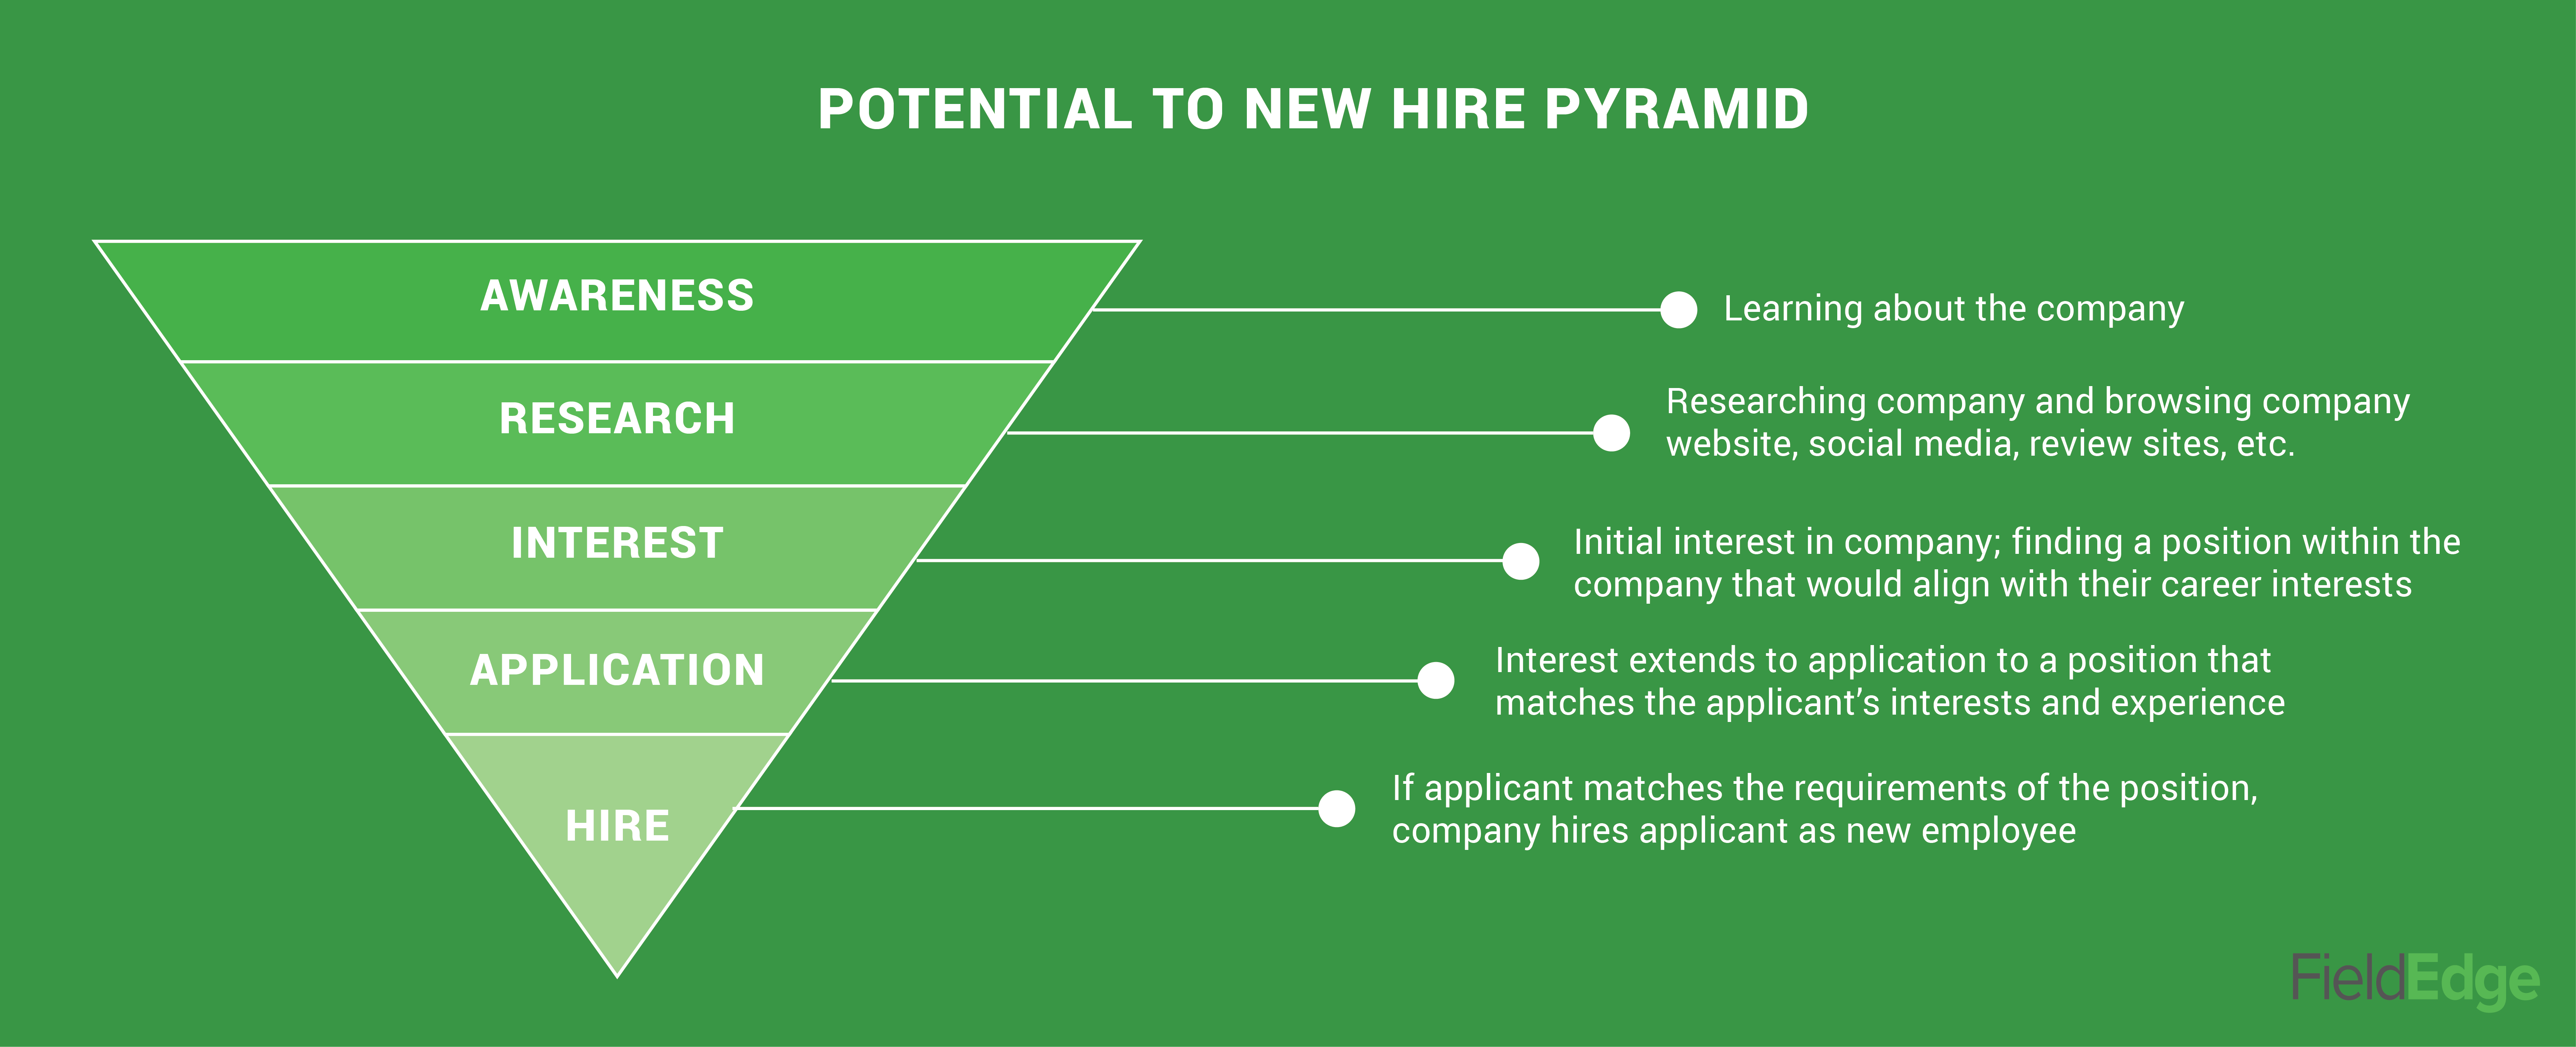 new hire pyramid